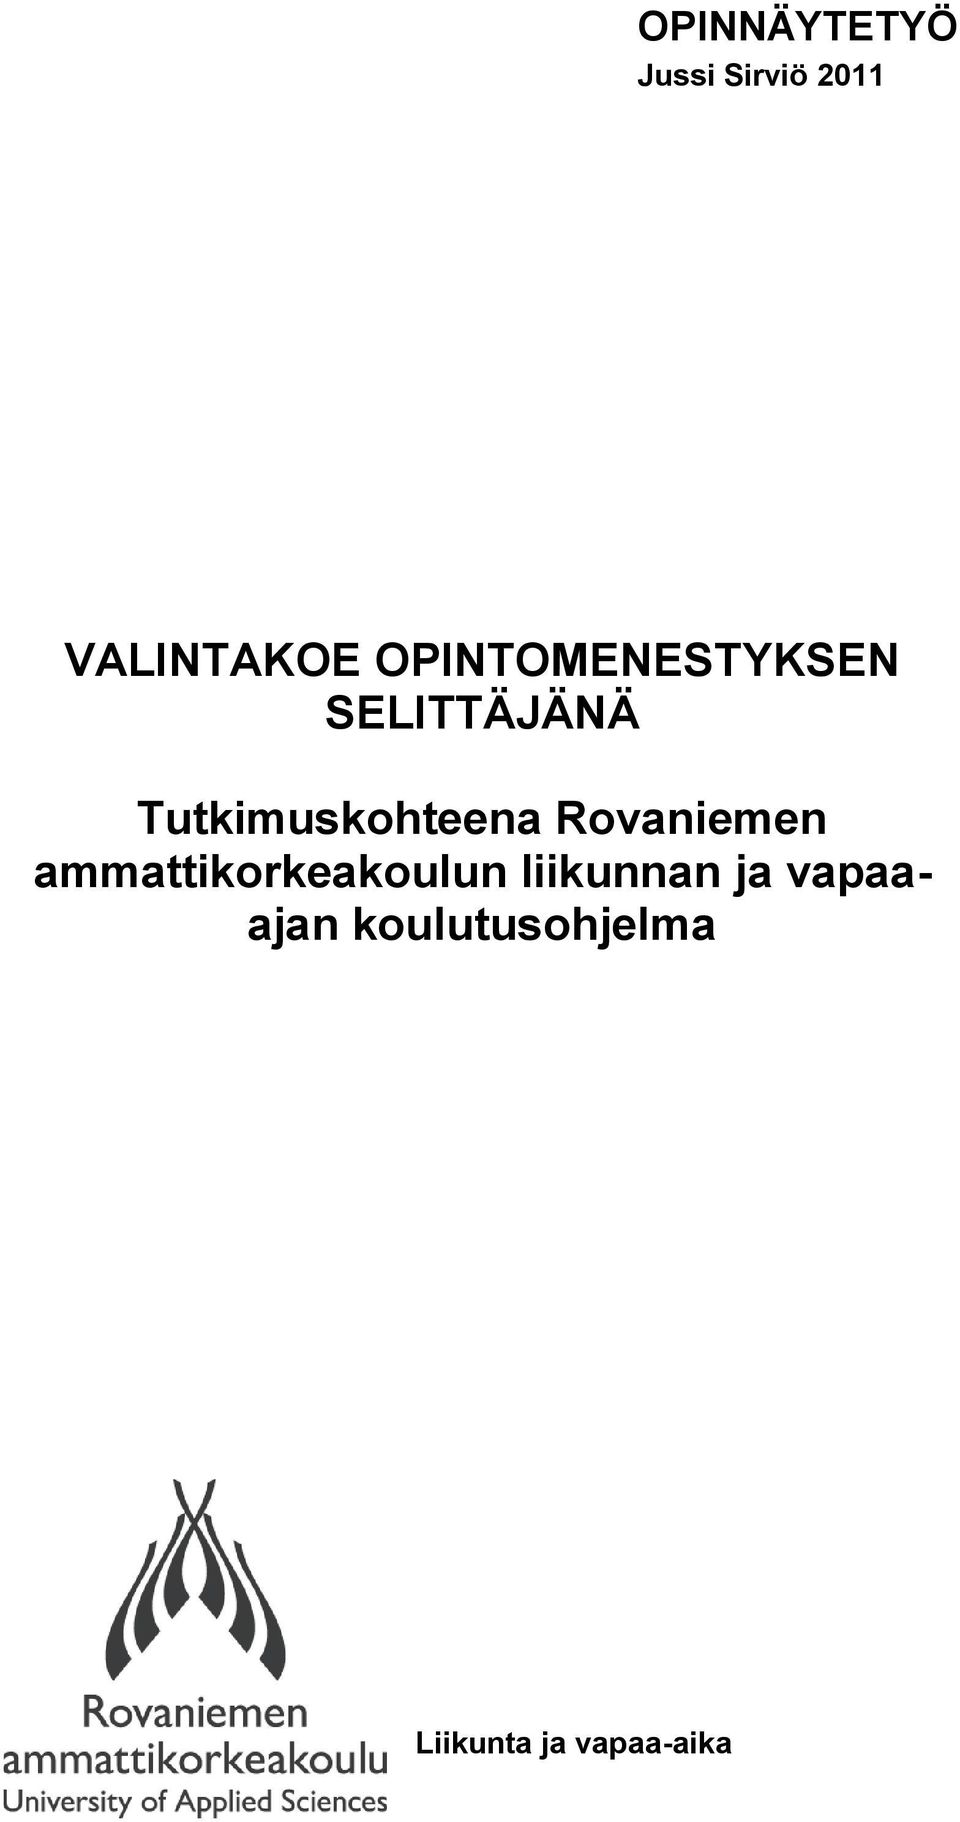 Tutkimuskohteena Rovaniemen